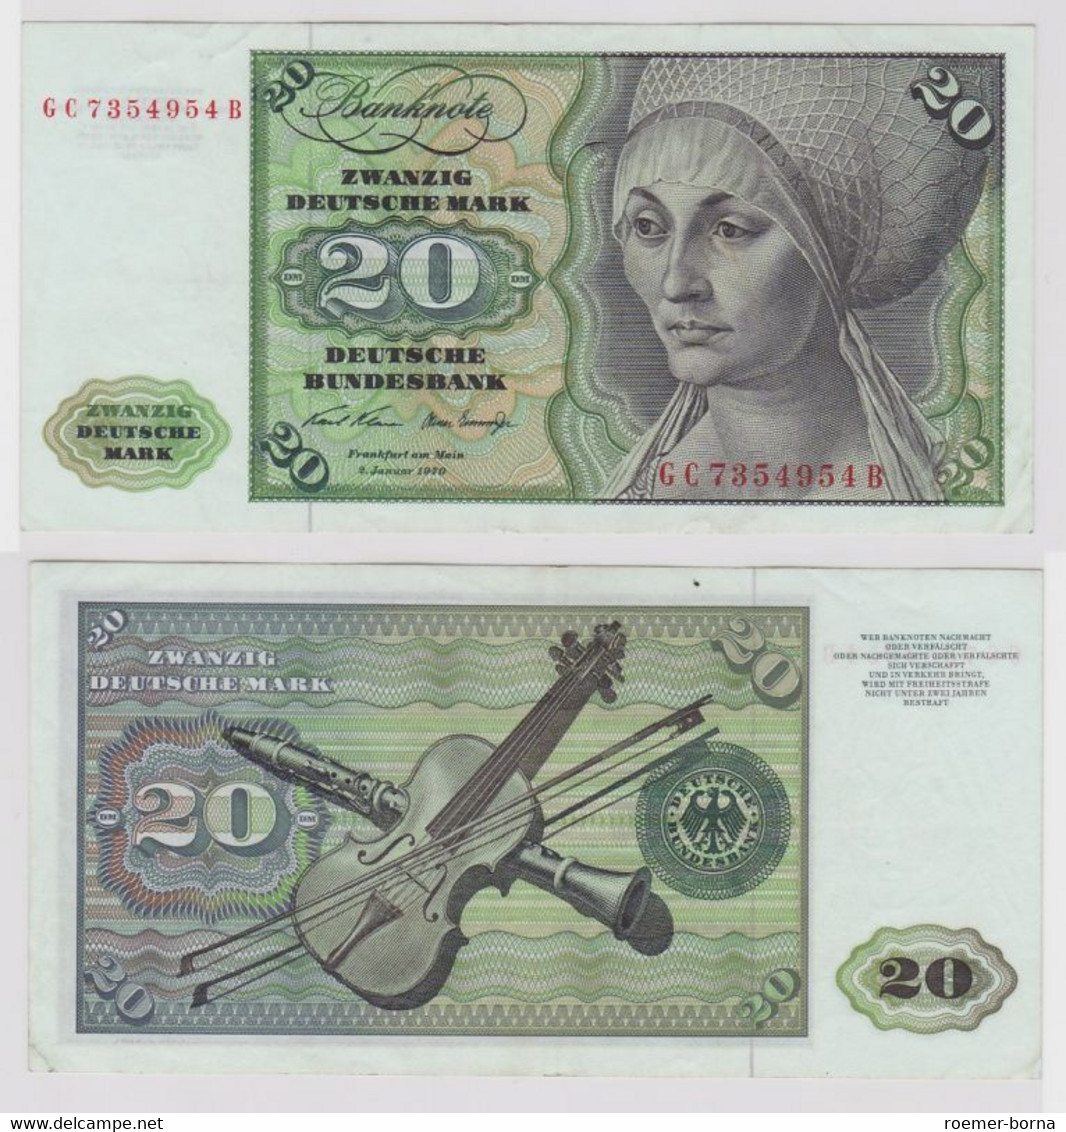 T148575 Banknote 20 DM Deutsche Mark Ro. 271a Schein 2.Jan. 1970 KN GC 7354954 B - 20 Deutsche Mark